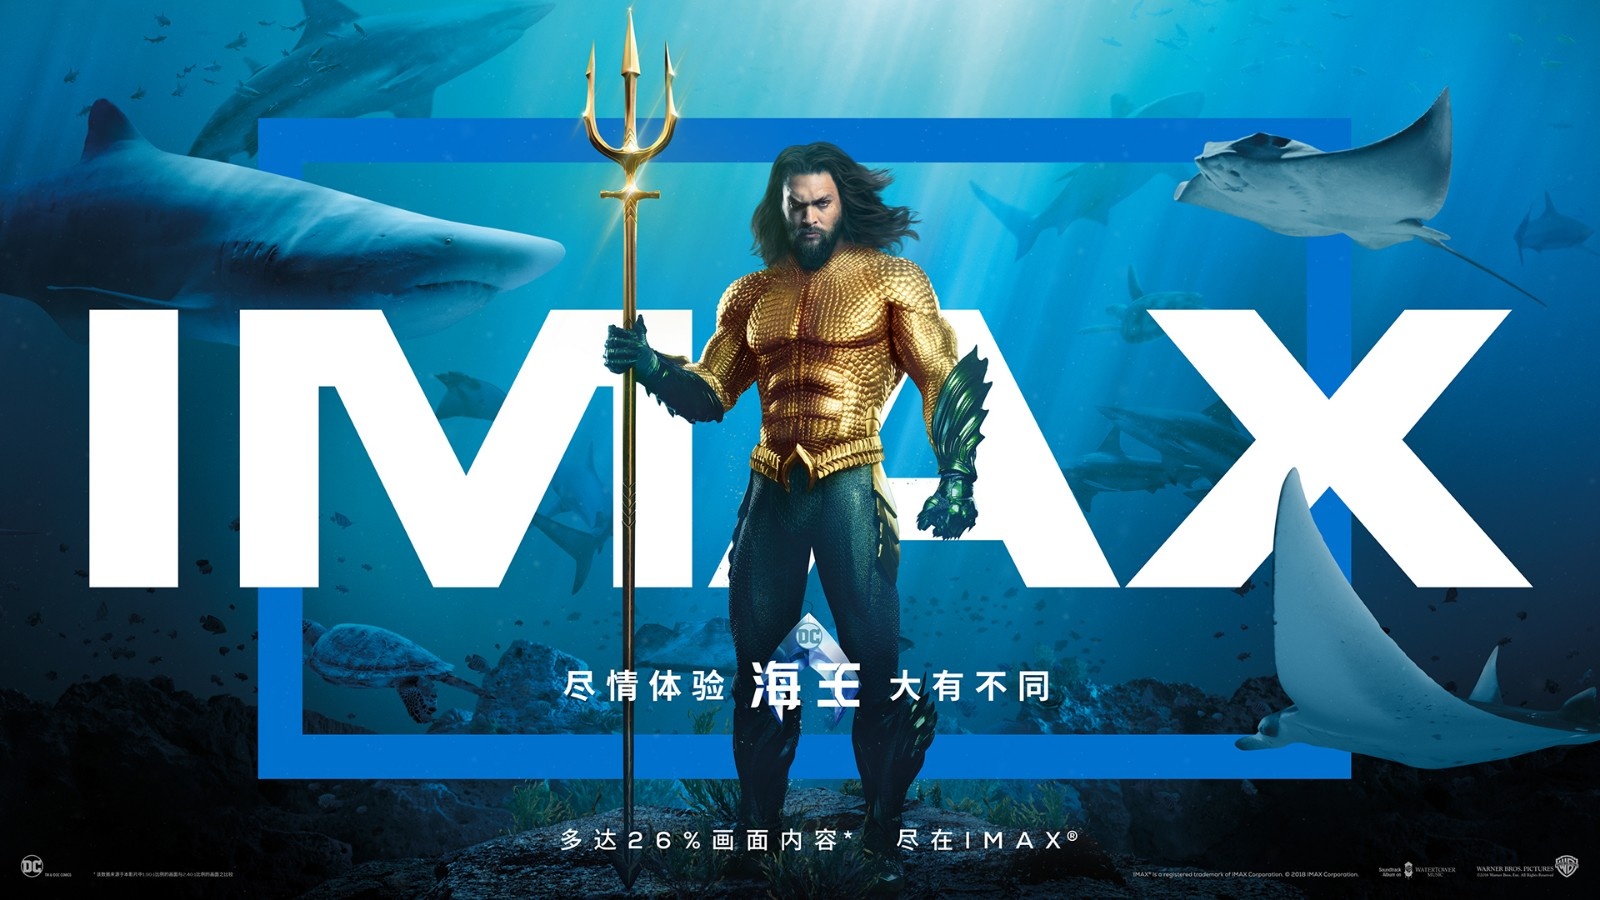 《海王》开画 破IMAX中国四季度首周末票房纪录